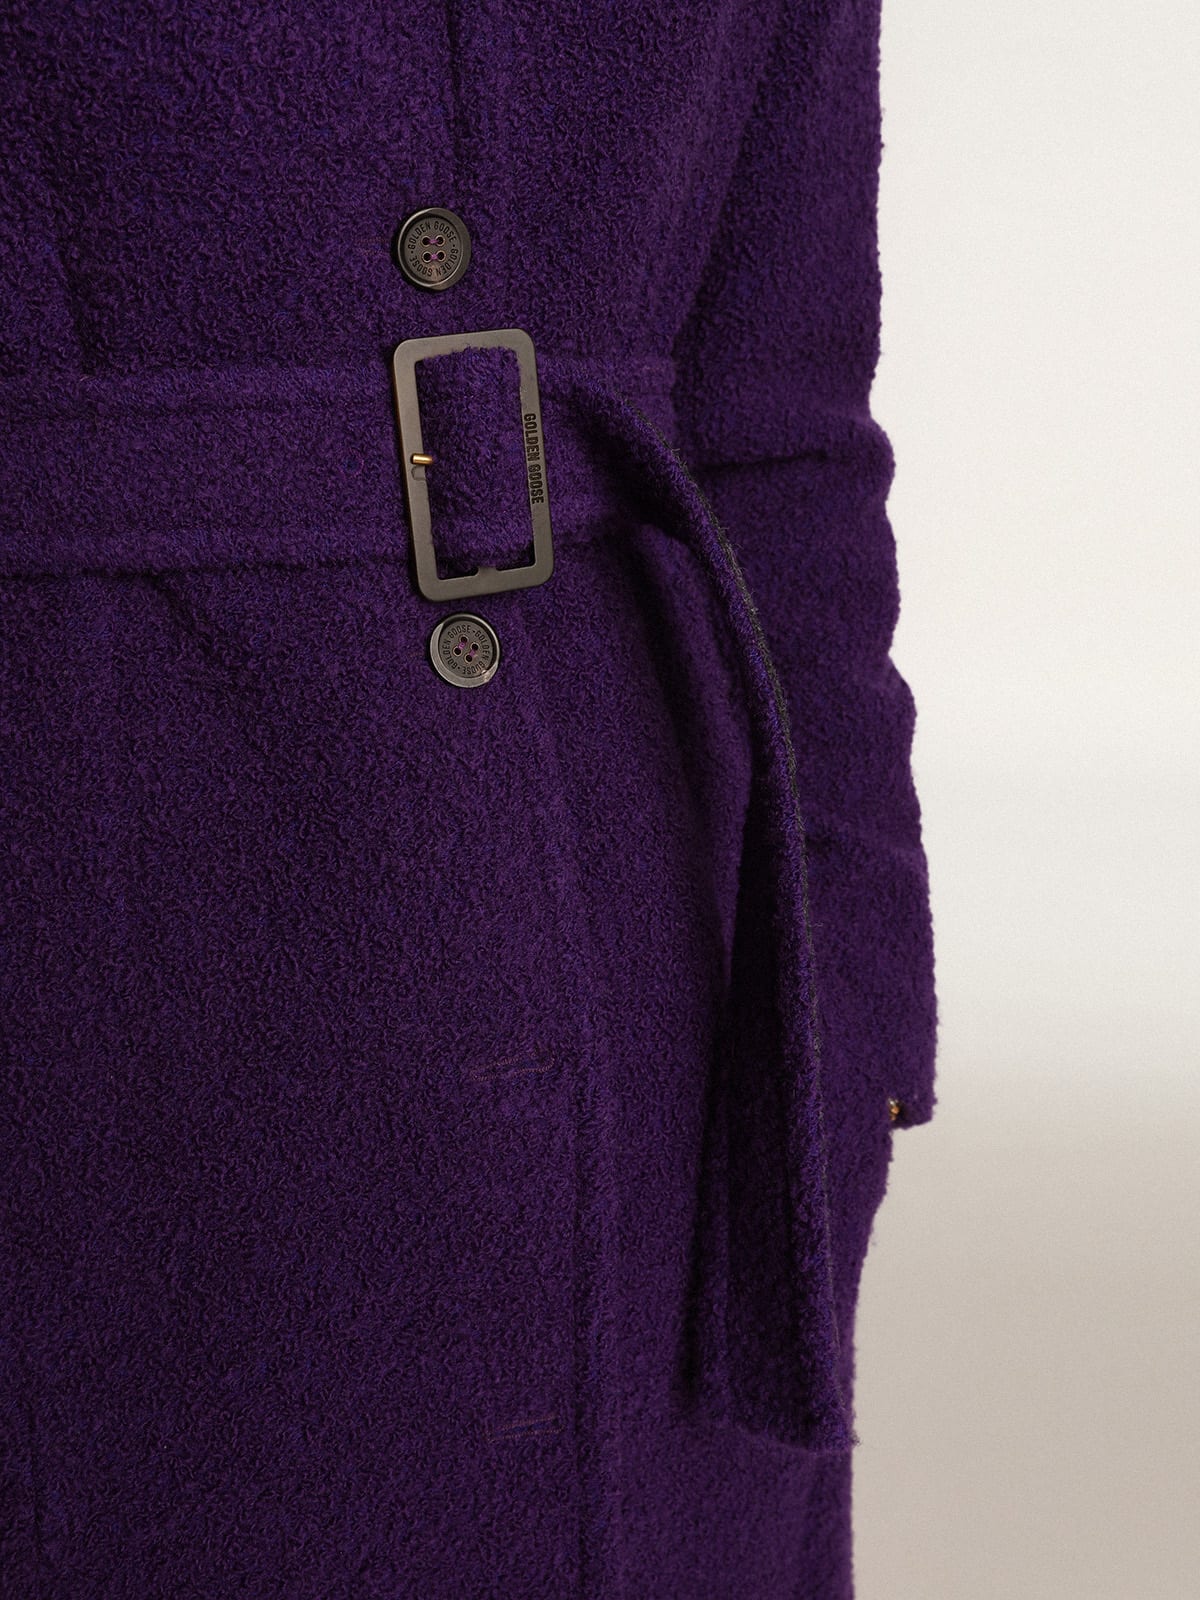 Golden Goose - Cappotto Collezione Journey color viola indaco in lana e fodera interna con stampa disegnata in 